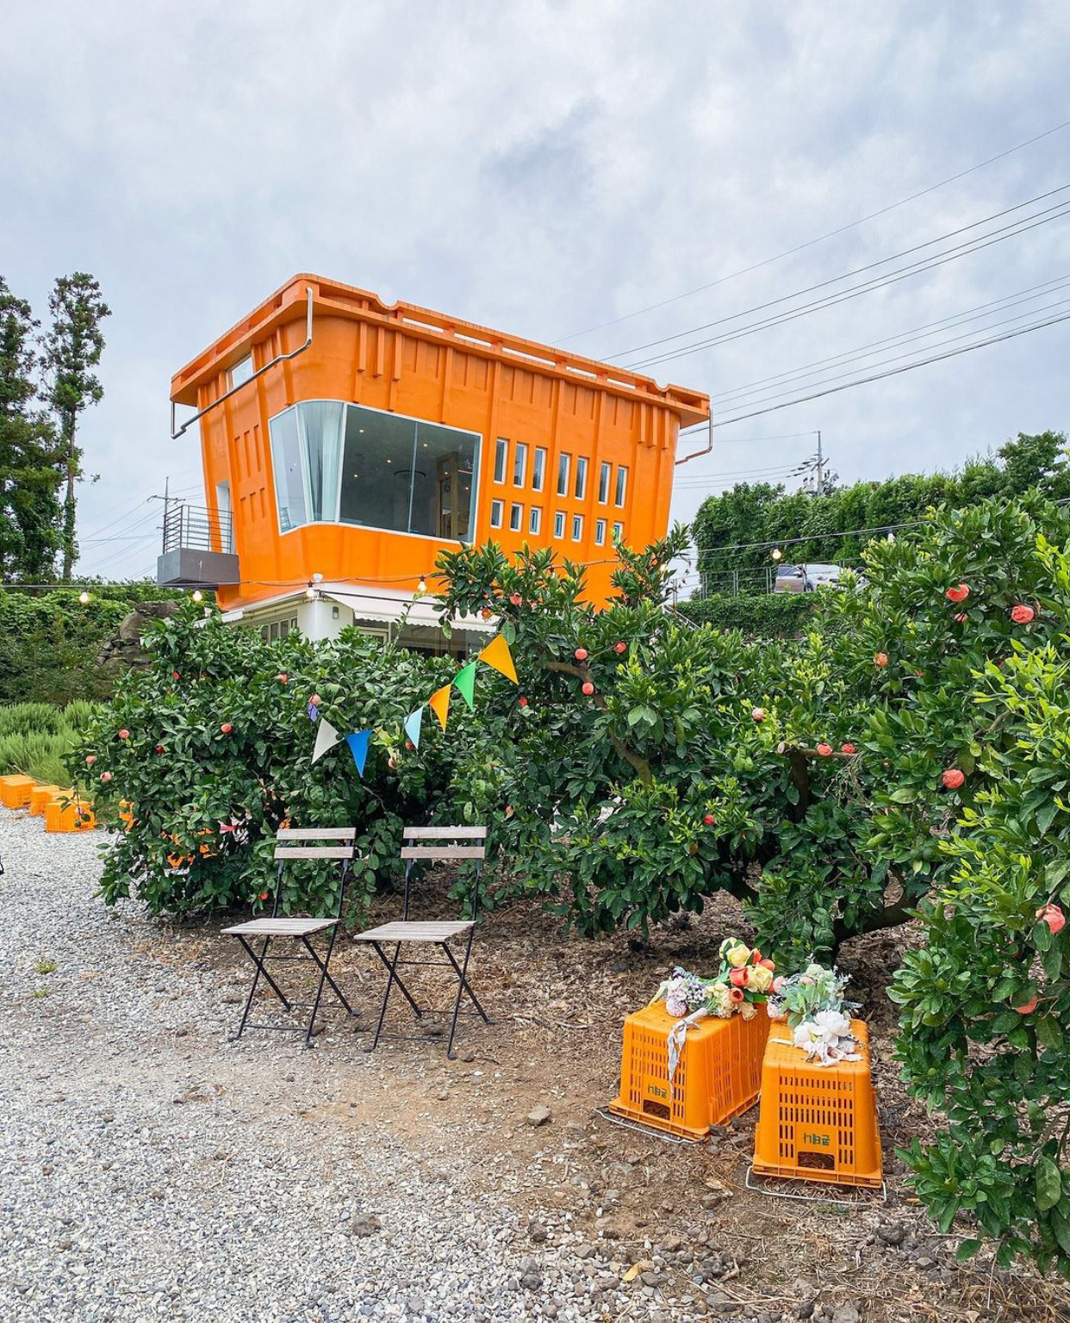 集装箱概念咖啡店空间 韩国 济州岛 咖啡店 集装箱 户外 橙色 logo设计 vi设计 空间设计